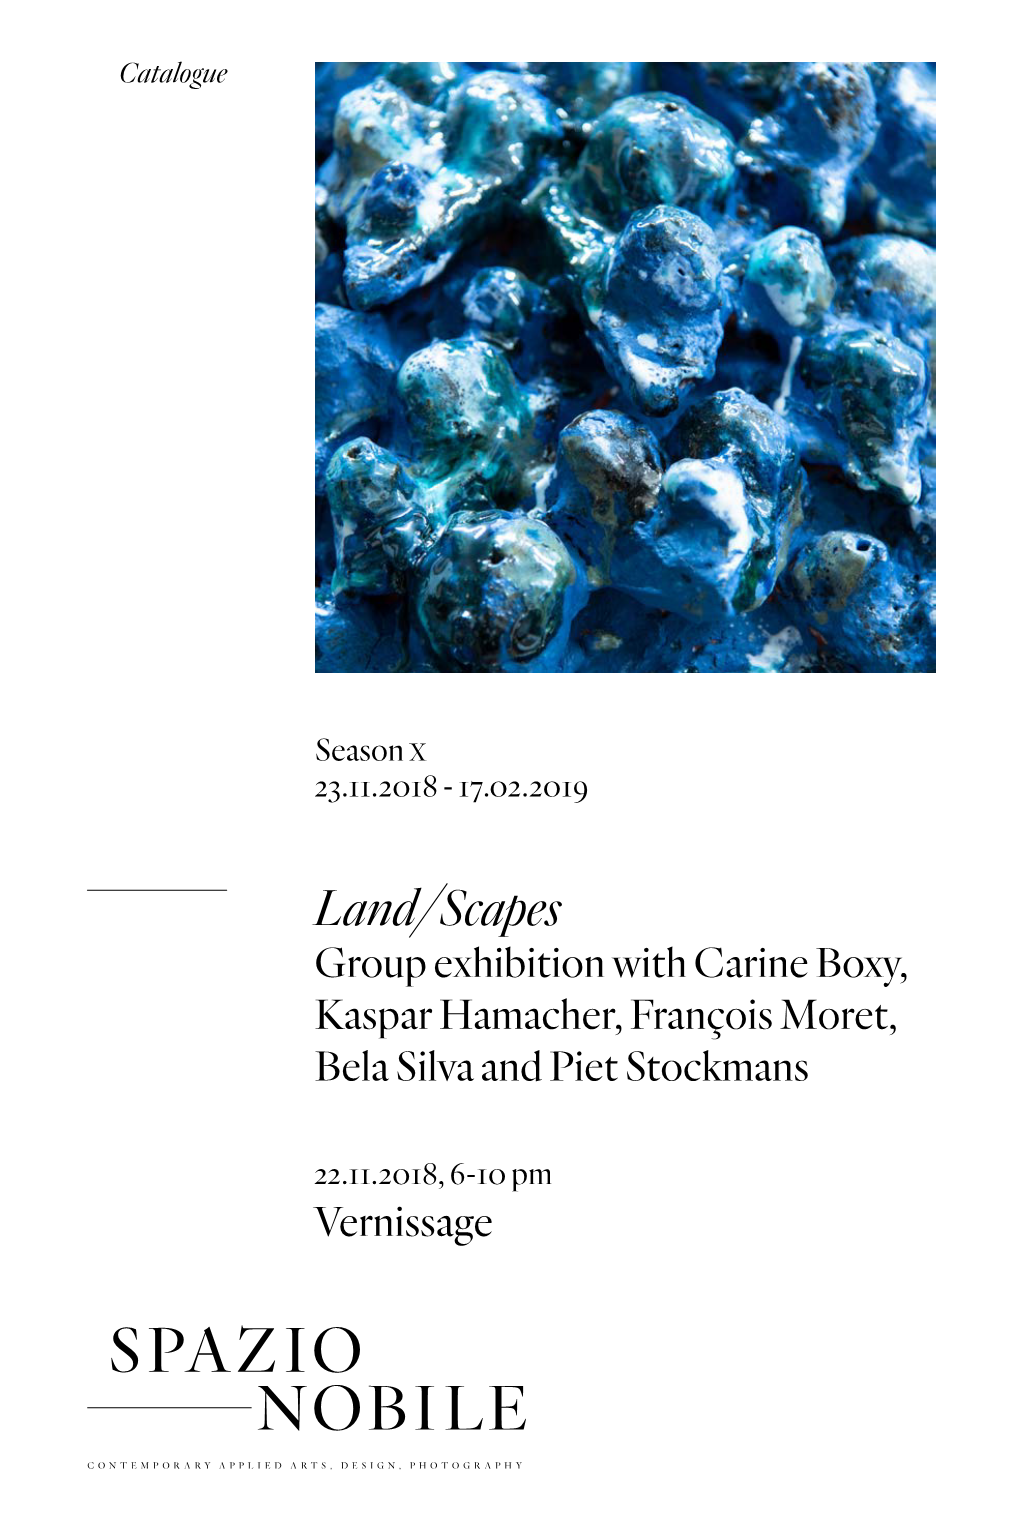 Land/Scapes Group Exhibition with Carine Boxy, Kaspar Hamacher, François Moret, Bela Silva and Piet Stockmans